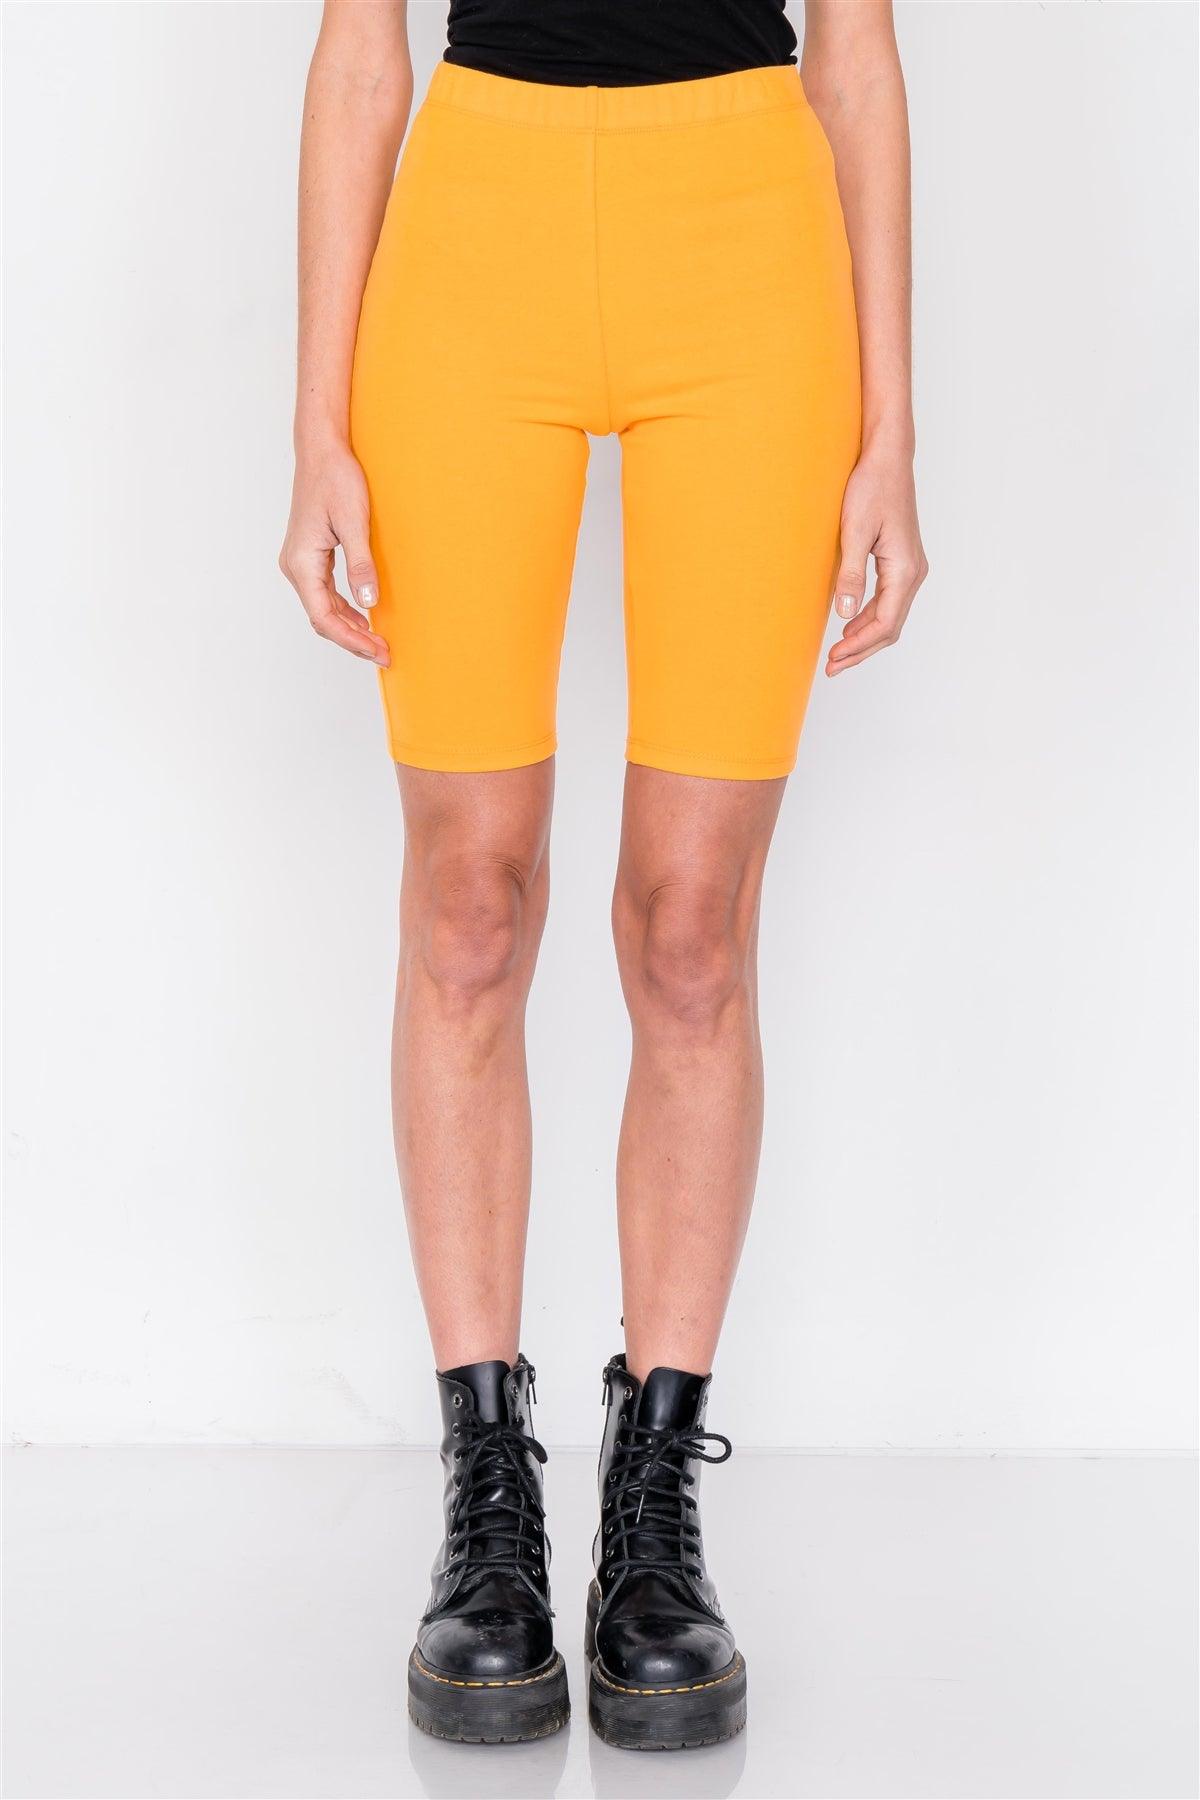 Orange Stretchy Athletic Biker Shorts /3-2-1